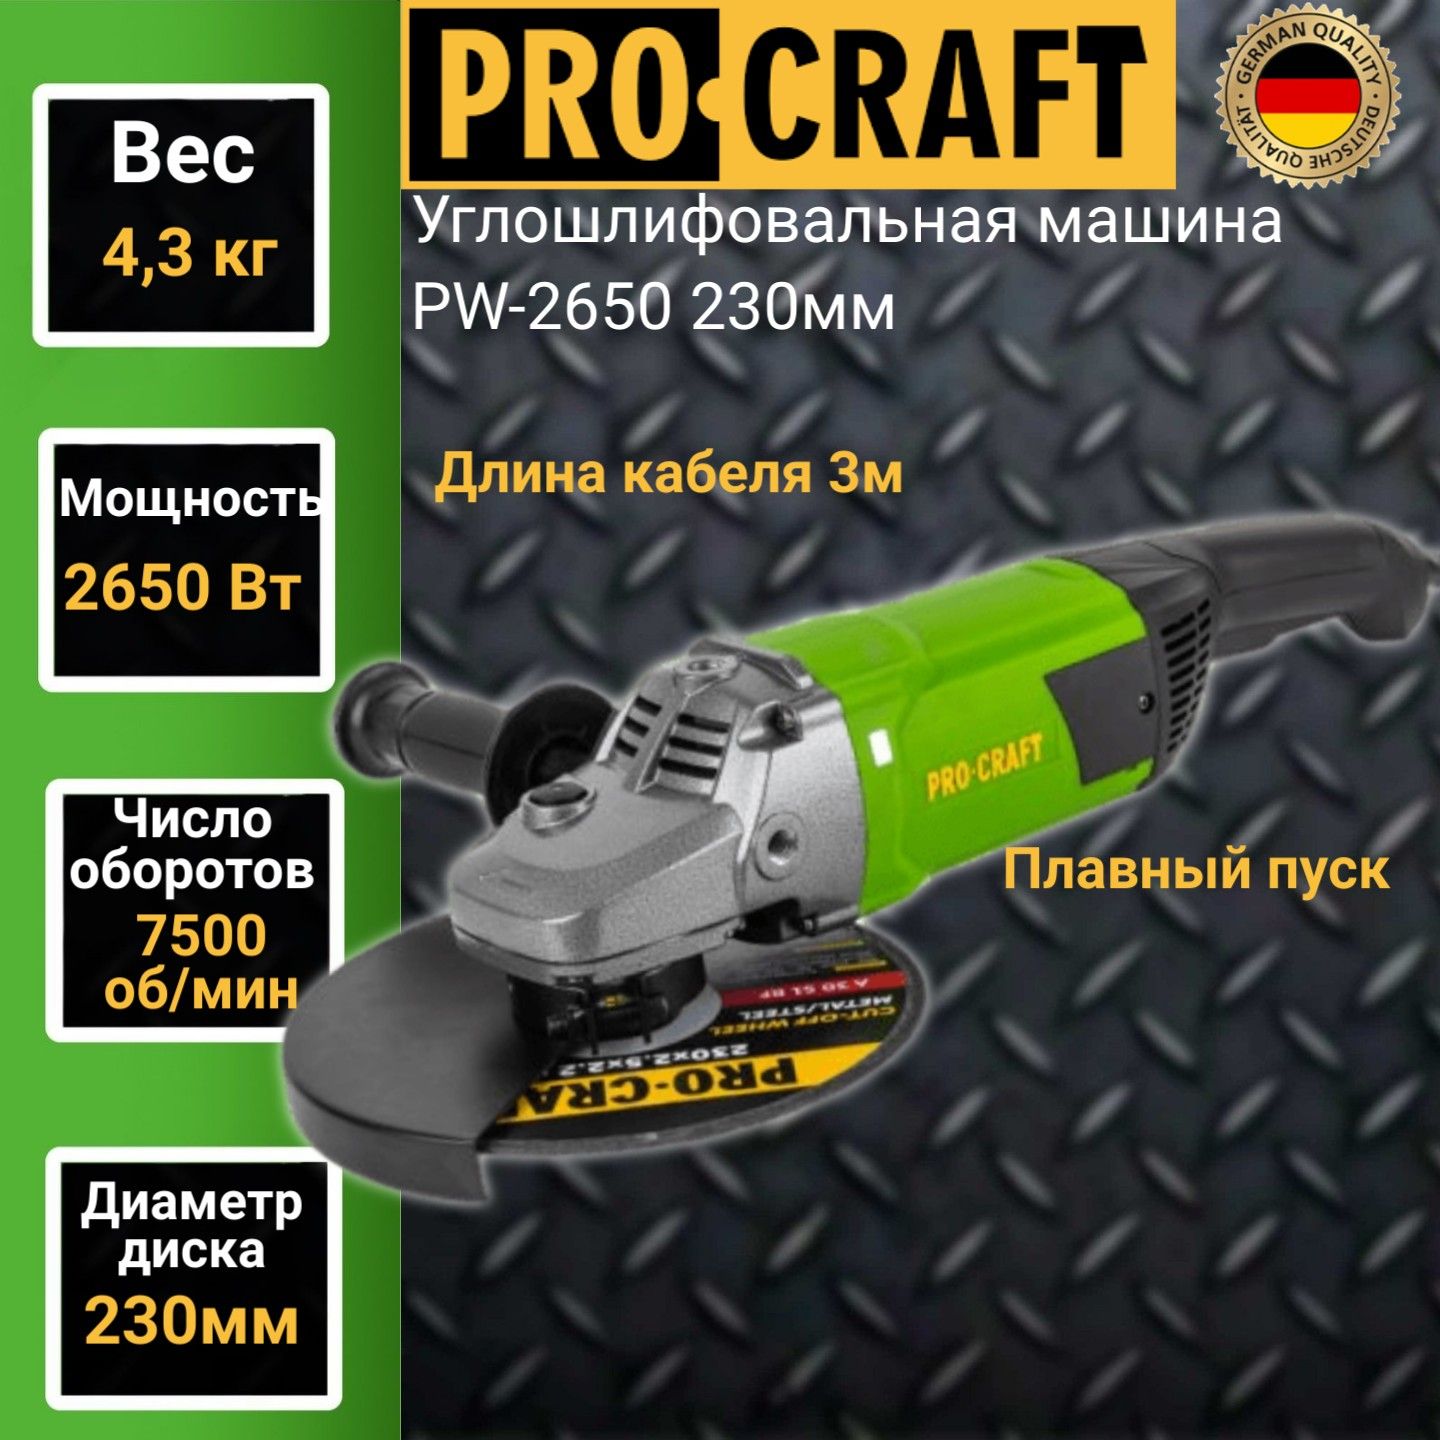 Углошлифовальная машина болгарка Procraft PW 2650, 230мм круг, 2650Вт, 7500об/мин